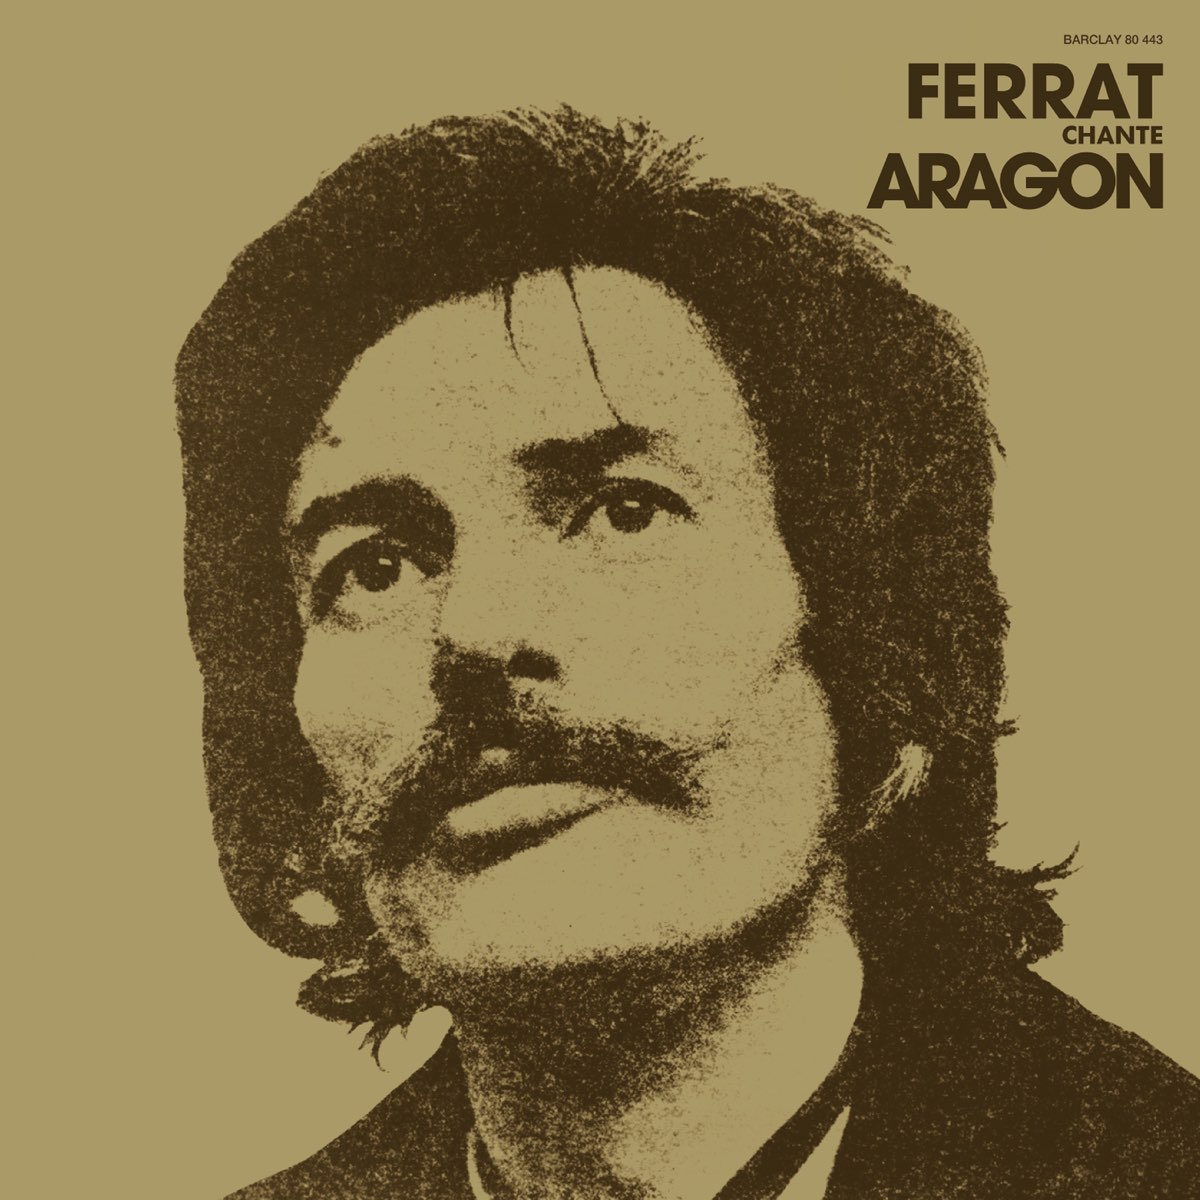 Ferrat chante Aragon - Album by Jean Ferrat - Apple Music